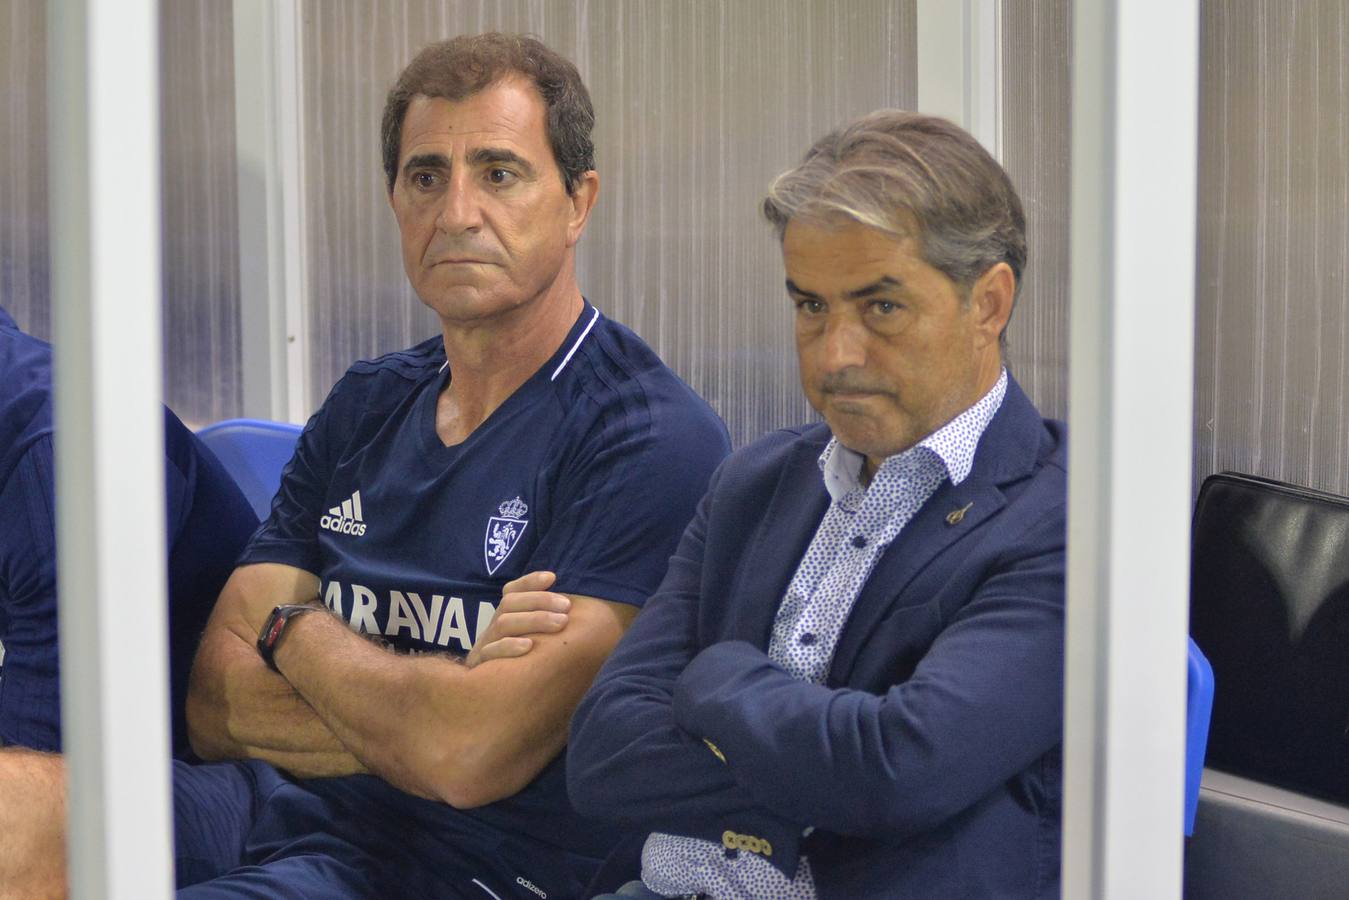 La victoria del Real Zaragoza deja al Lorca FC más hundido